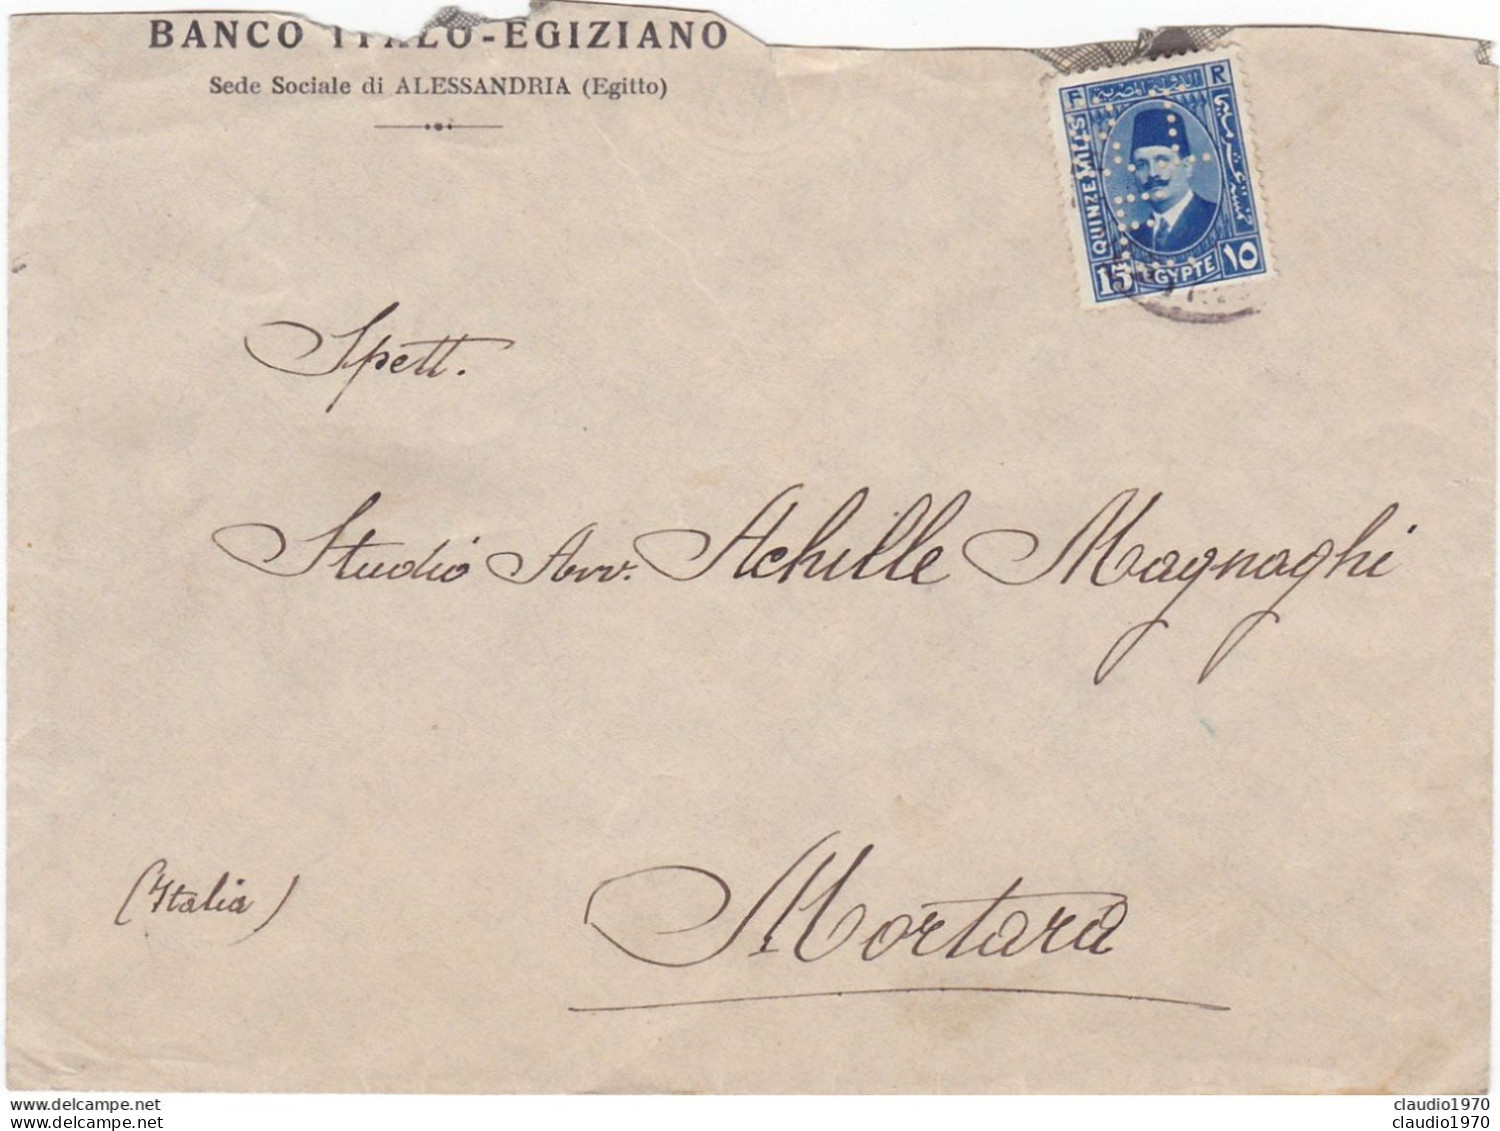 EGITTO - ALESSANDRIA - BANCO ITALO - EGIZIANO - BUSTA VIAGGIATA PER MORTARA(PV) 1957 - FRANCOBOLLO PERFIN - Briefe U. Dokumente